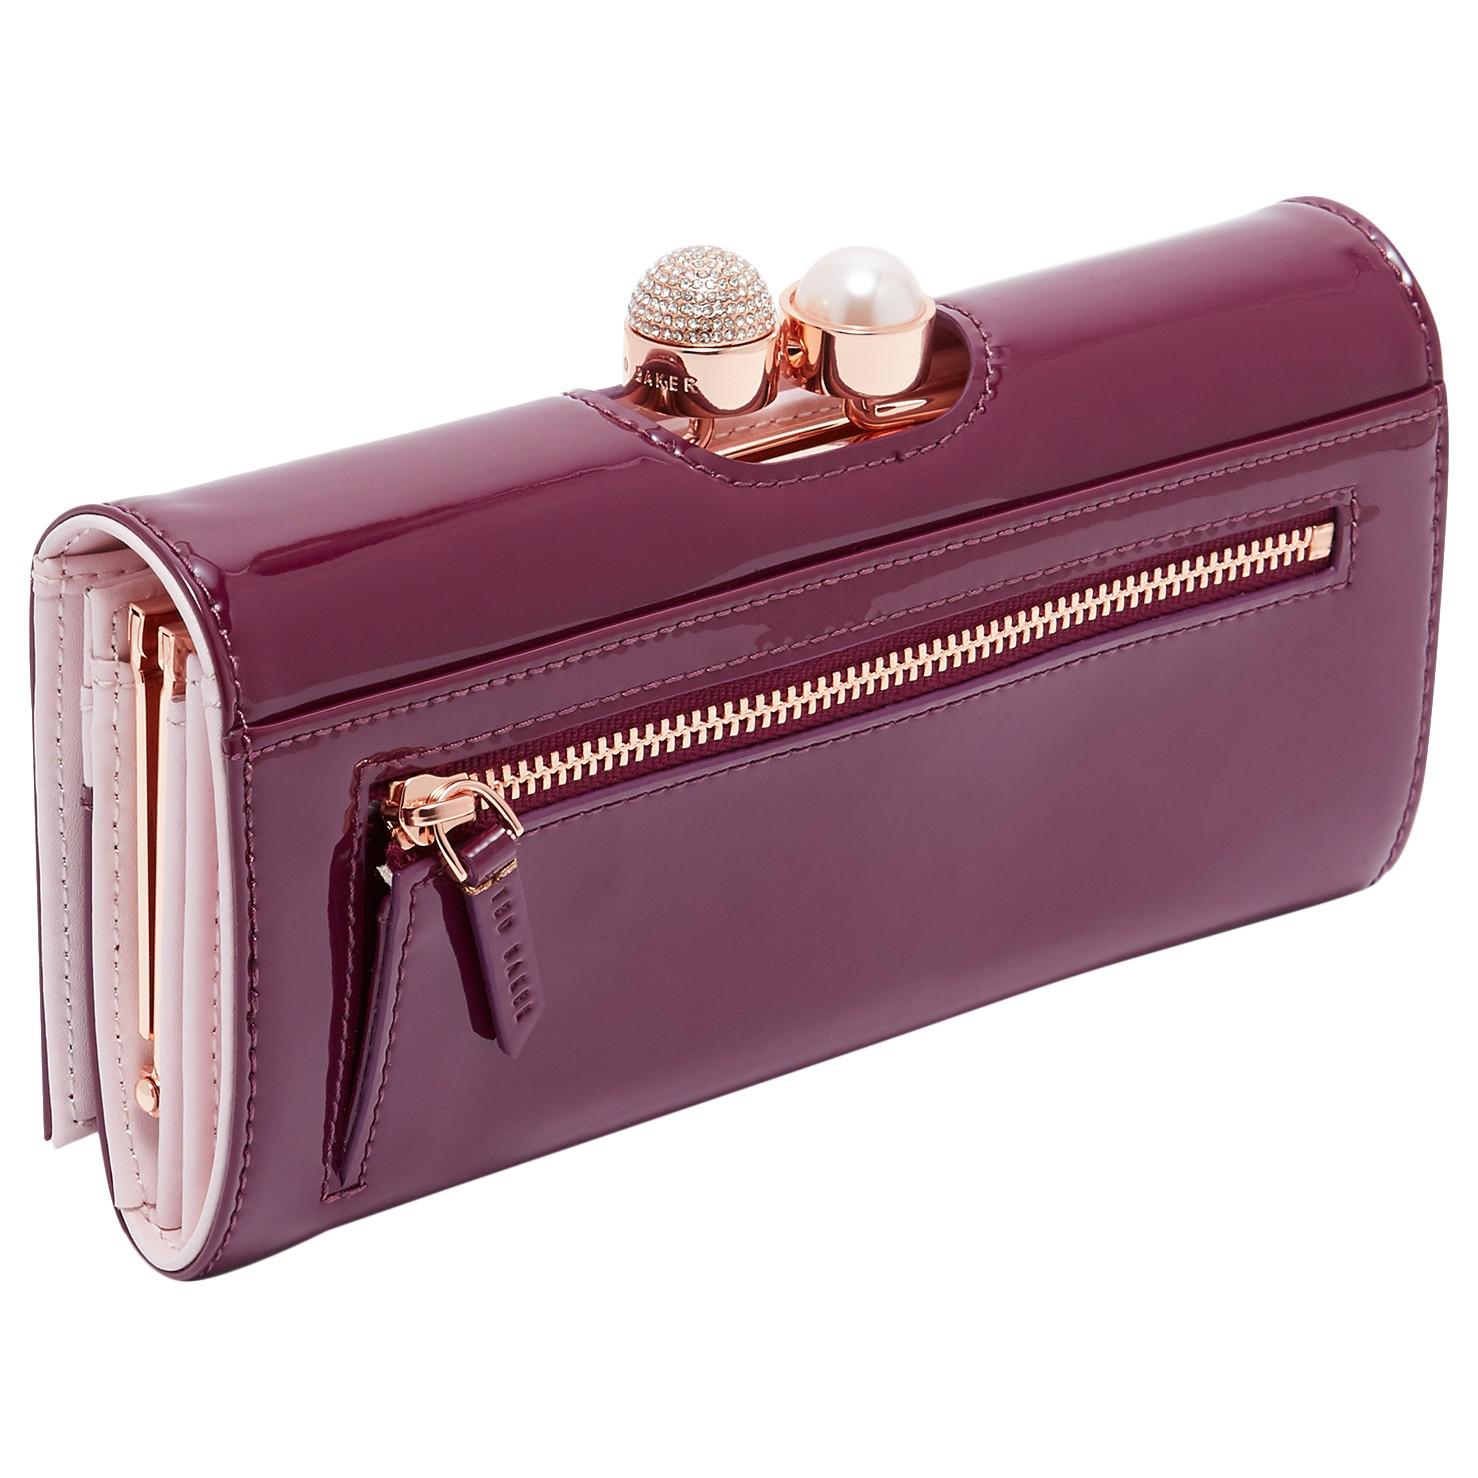 Ted Baker Small Bags & Handbags for Women for sale | eBay